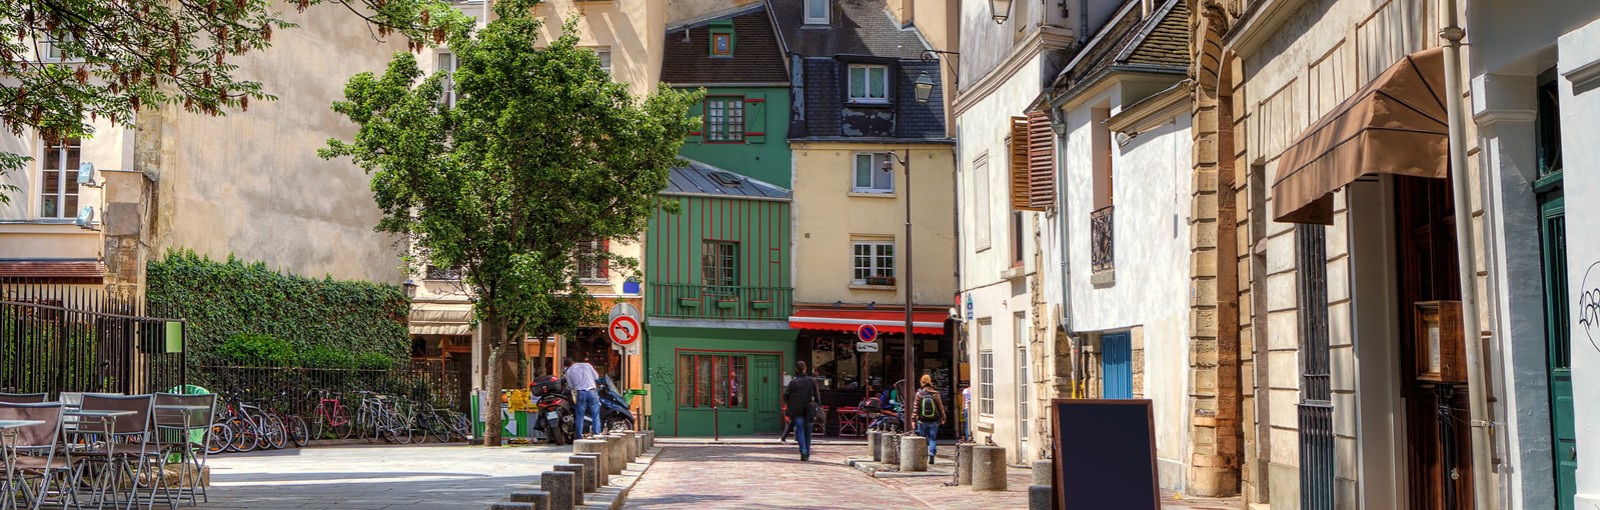 Tours Vieux quartier du Marais, Place des Vosges, Le village Saint Paul - Visites pédestres - Visites de Paris